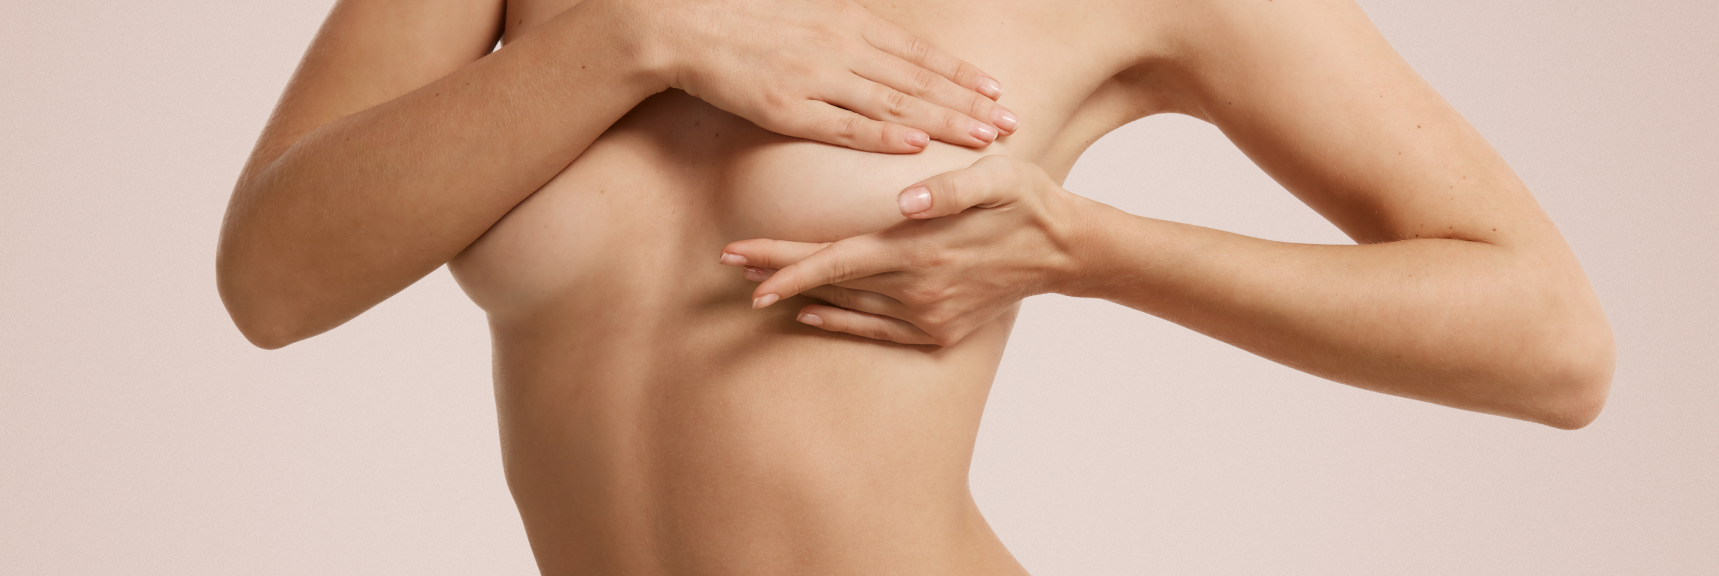 Птоз груди: как пластическая хирургия решает этот вопрос?